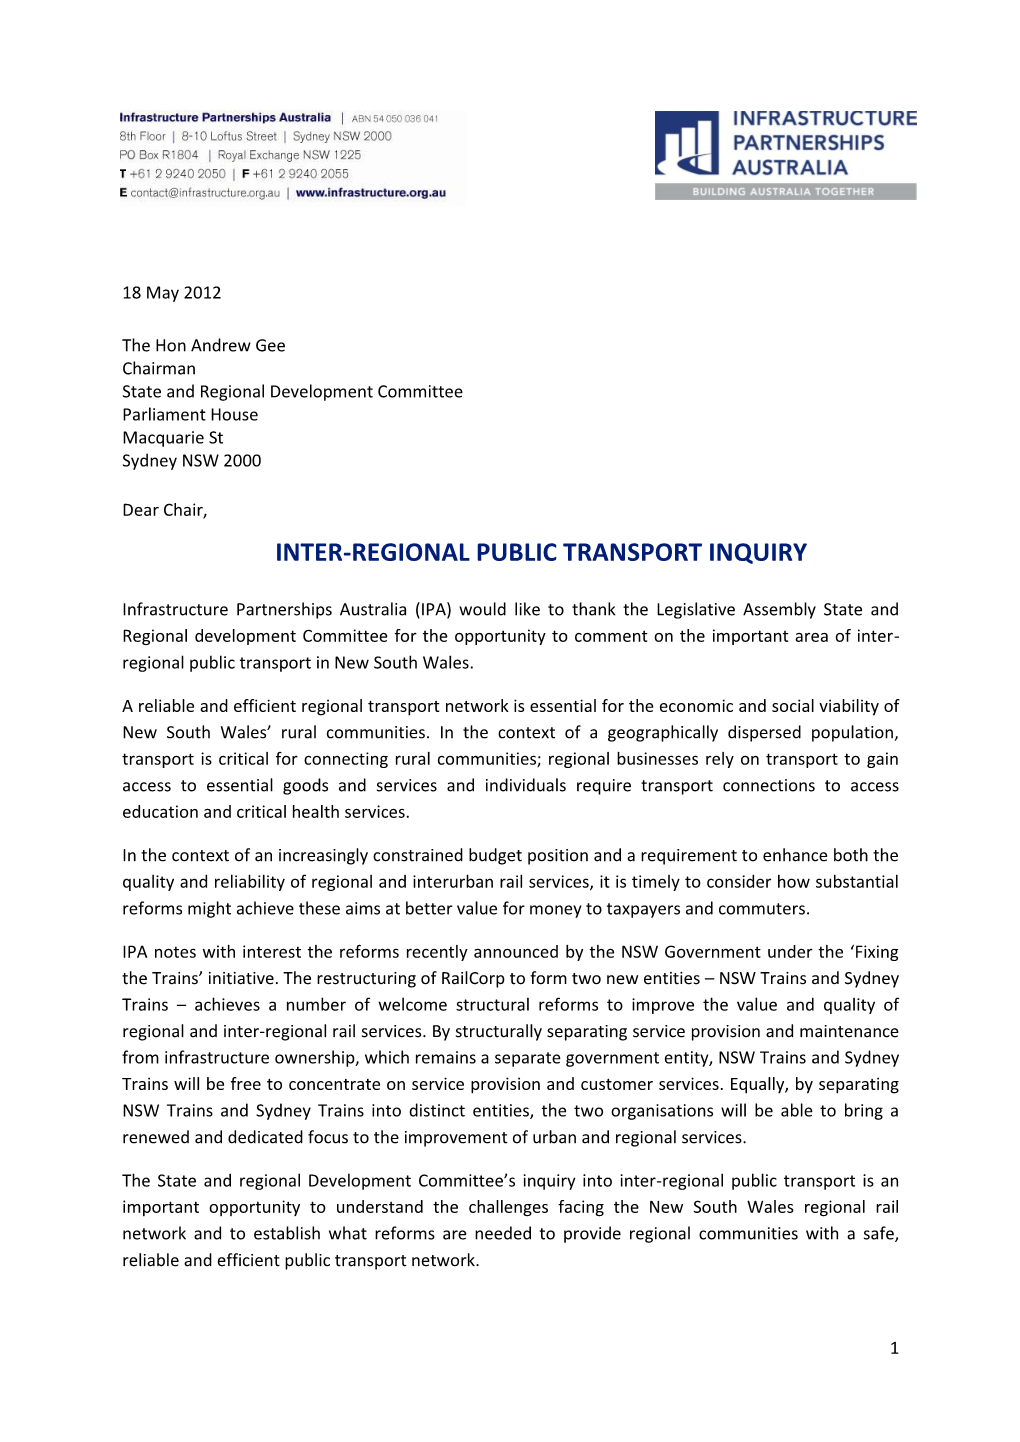 Inter-Regional Public Transport Inquiry